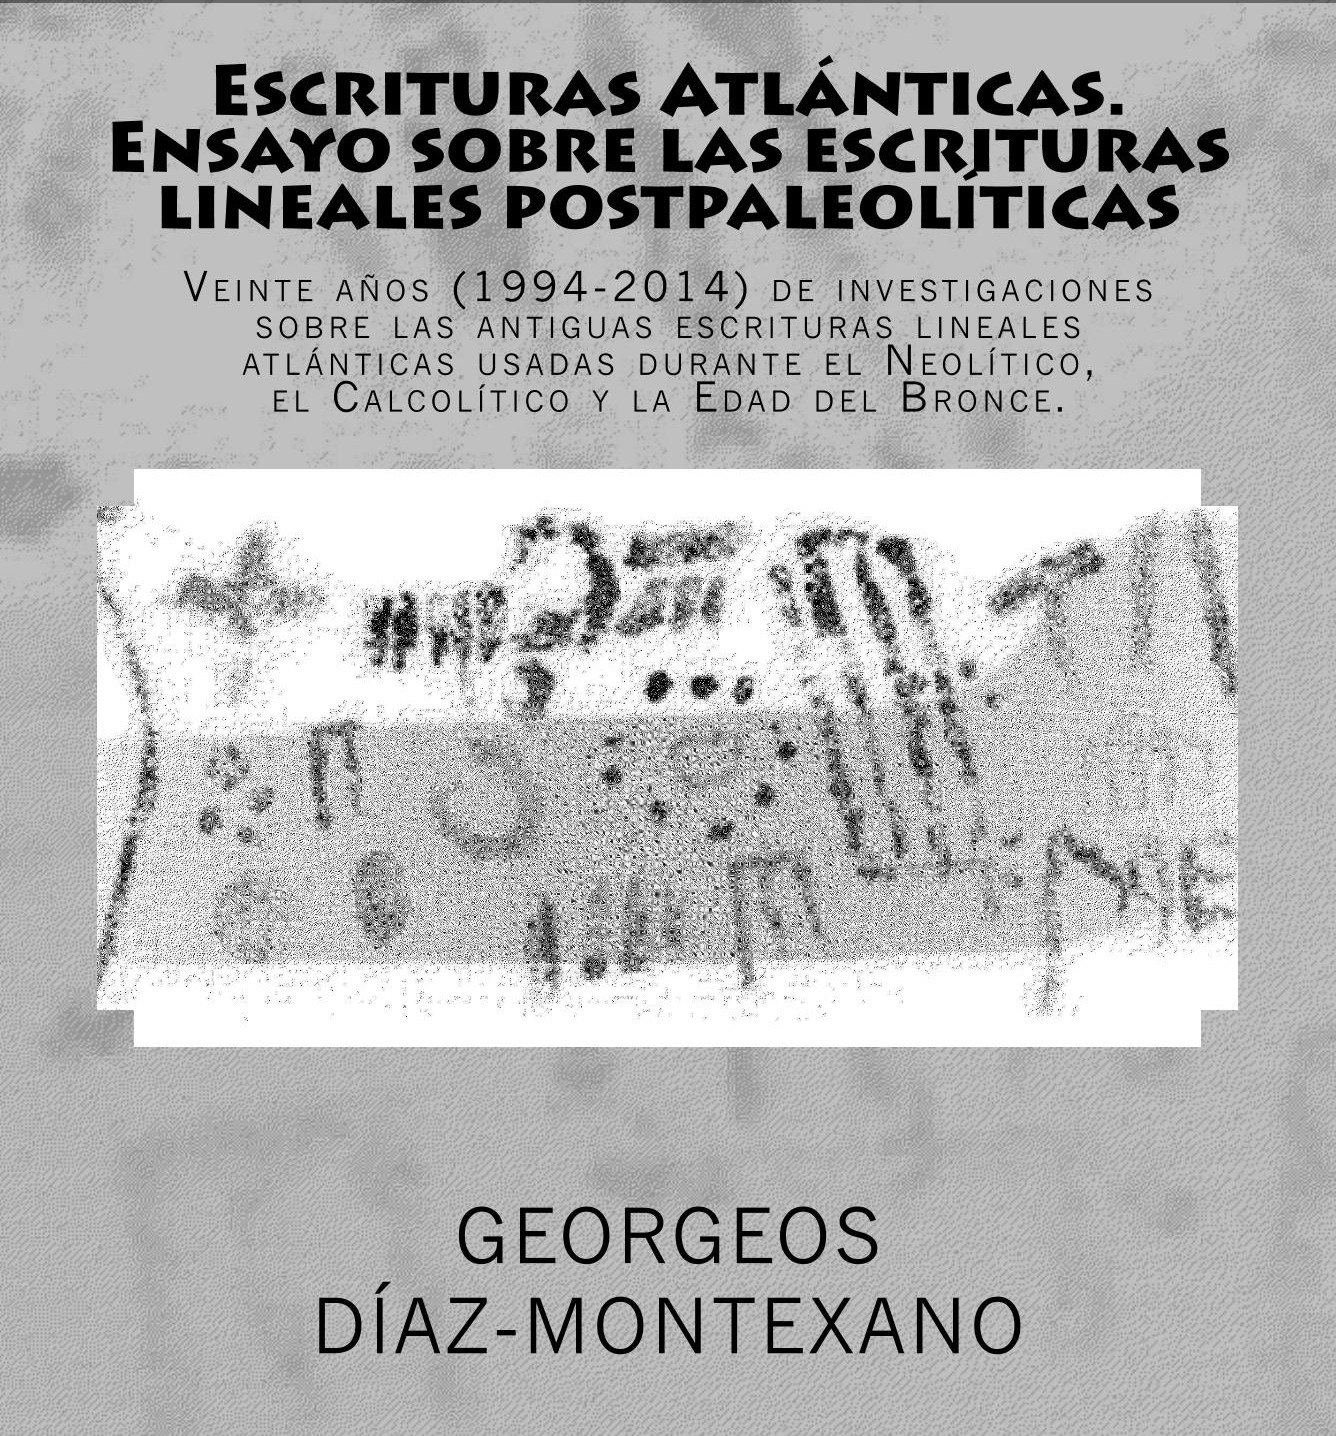 Signos ELA en pinturas rupestres de la cueva Navazuelas, Cáceres. Fuente: Georgeos Díaz-Montexano